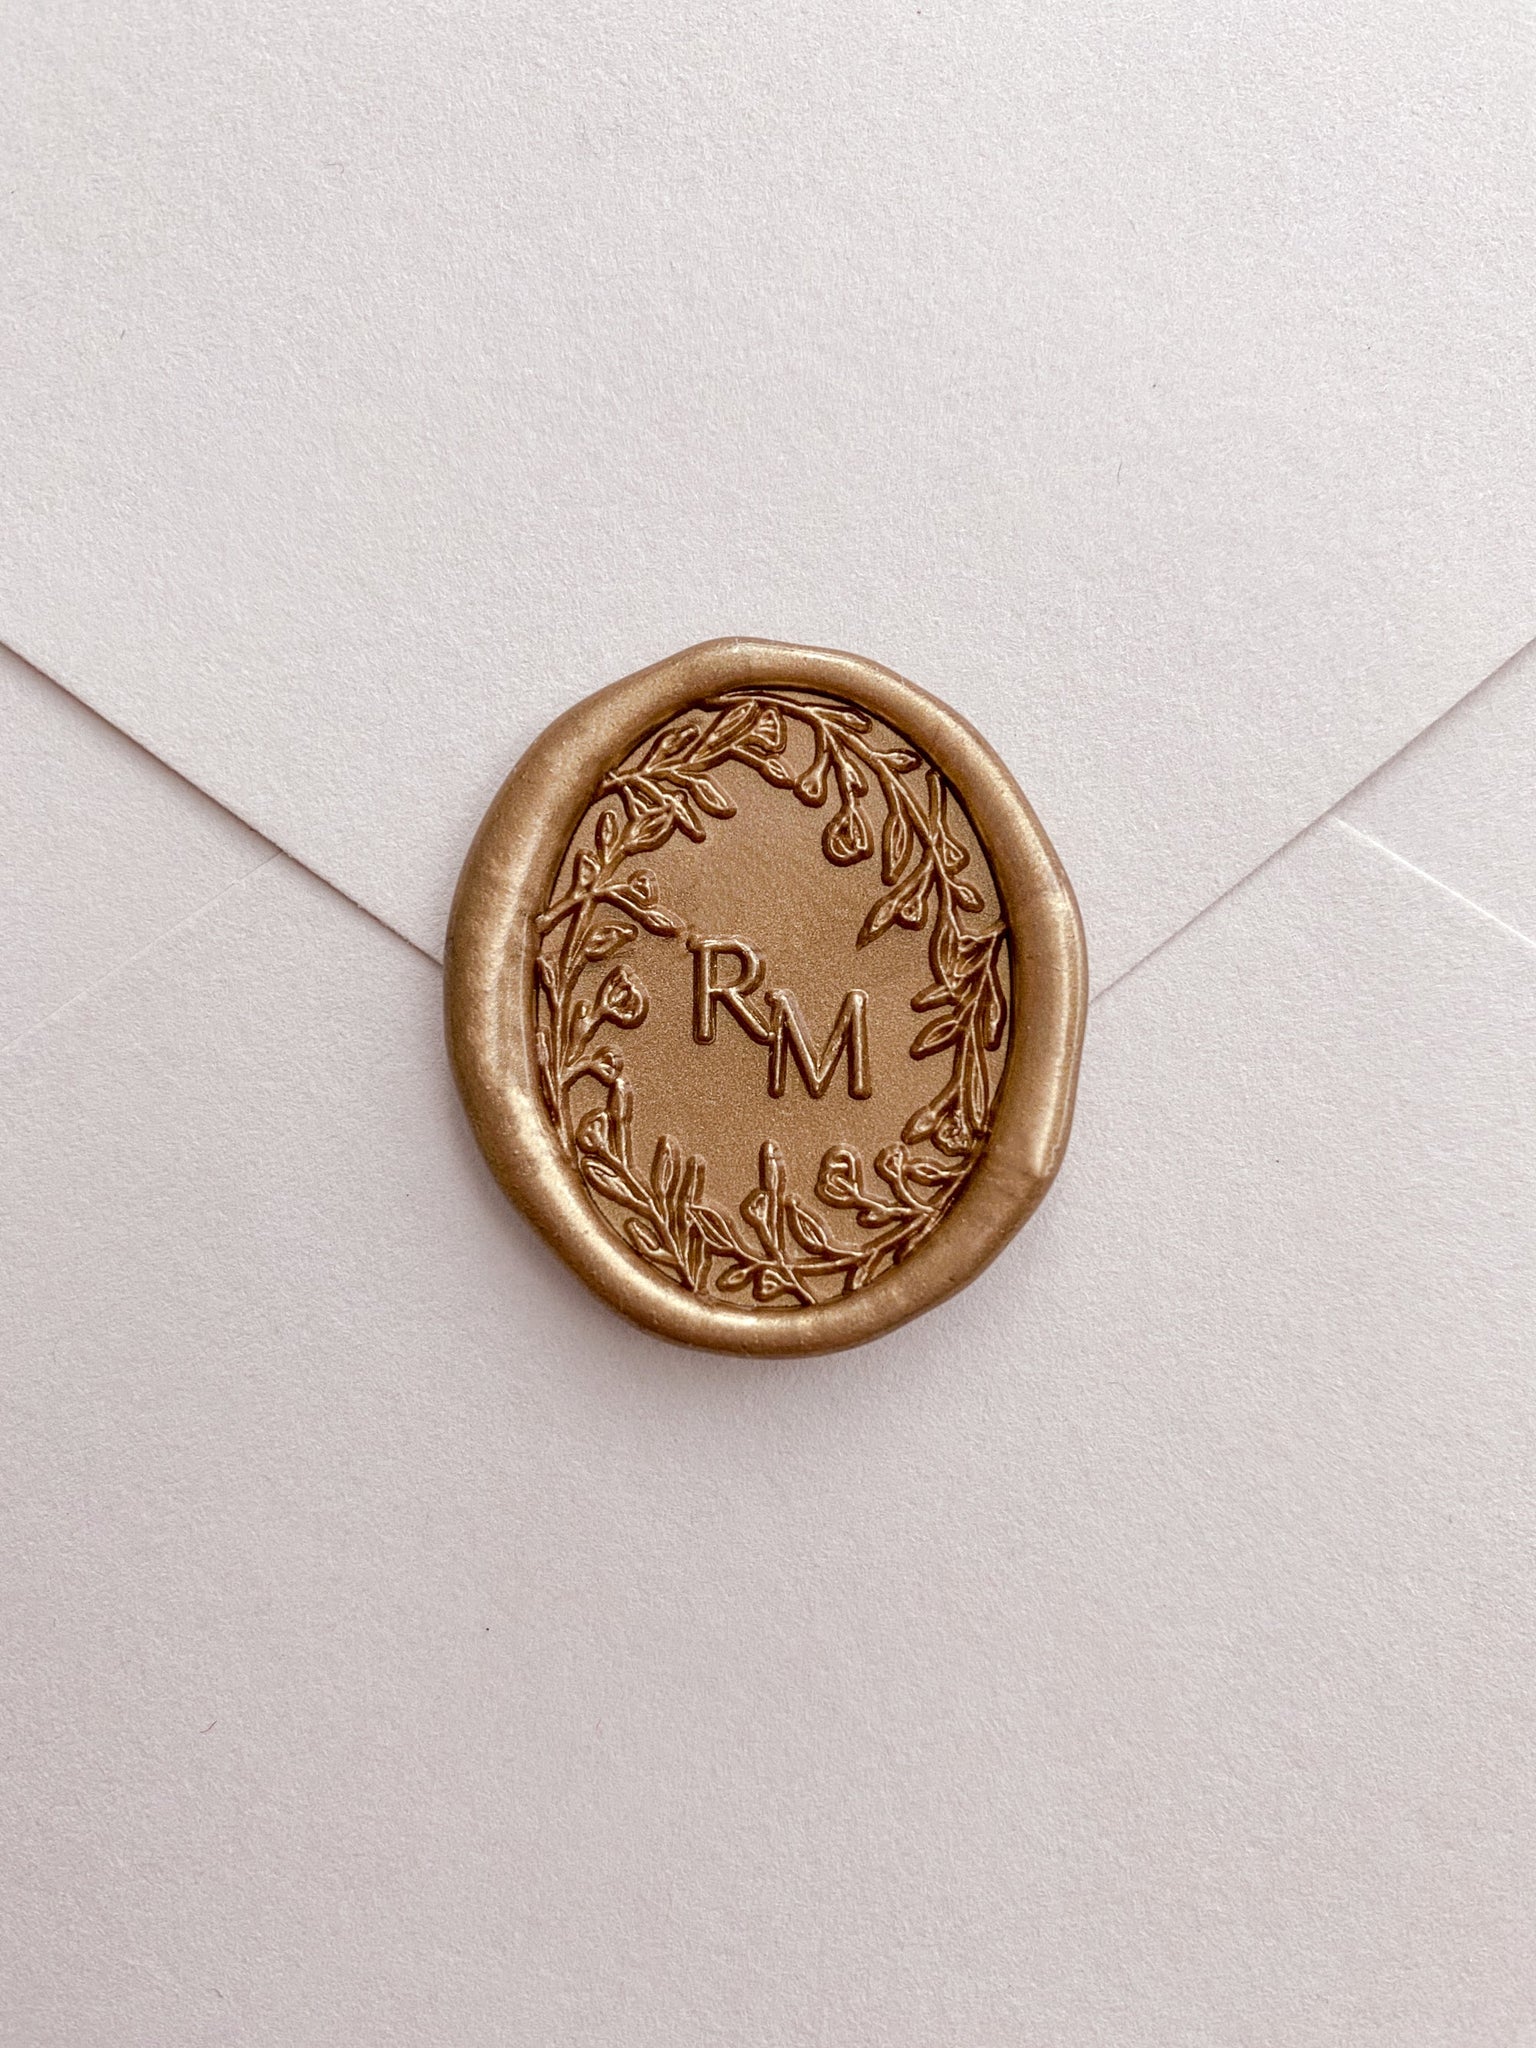 Oval floral crown monogram gold custom wax seal on beige paper envelope 